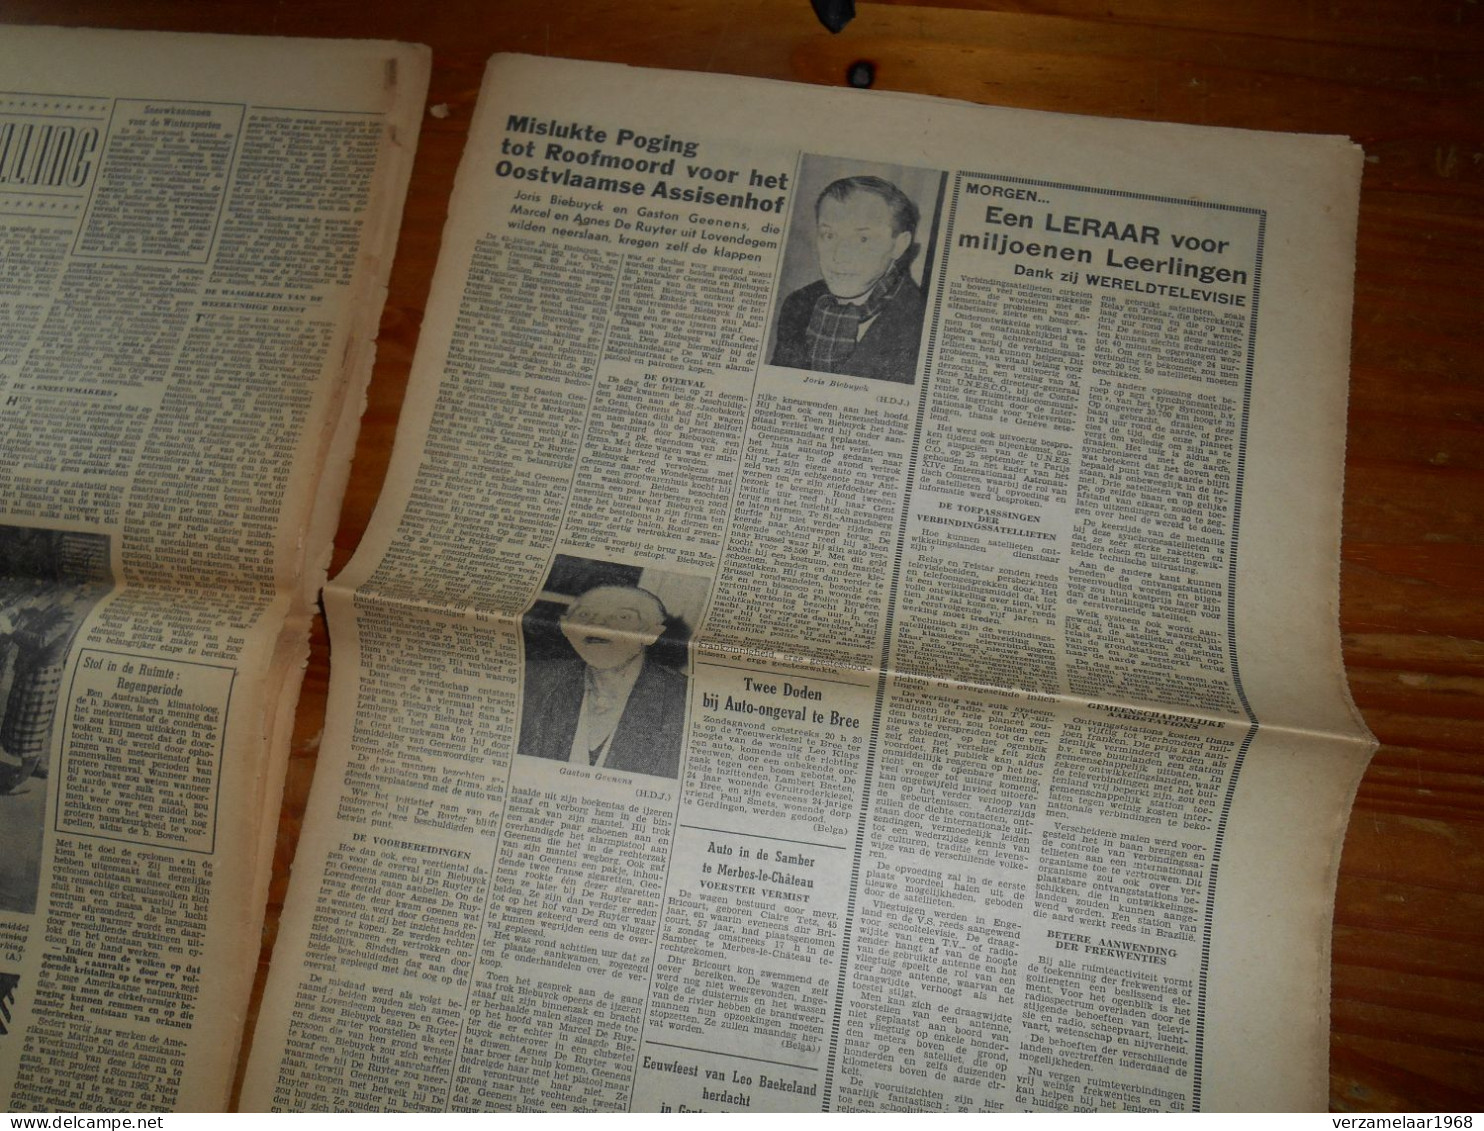 De Moord op : PRESIDENT KENNEDY , origenele krantknipsels uit : 1963 -- ( ismo 21 )